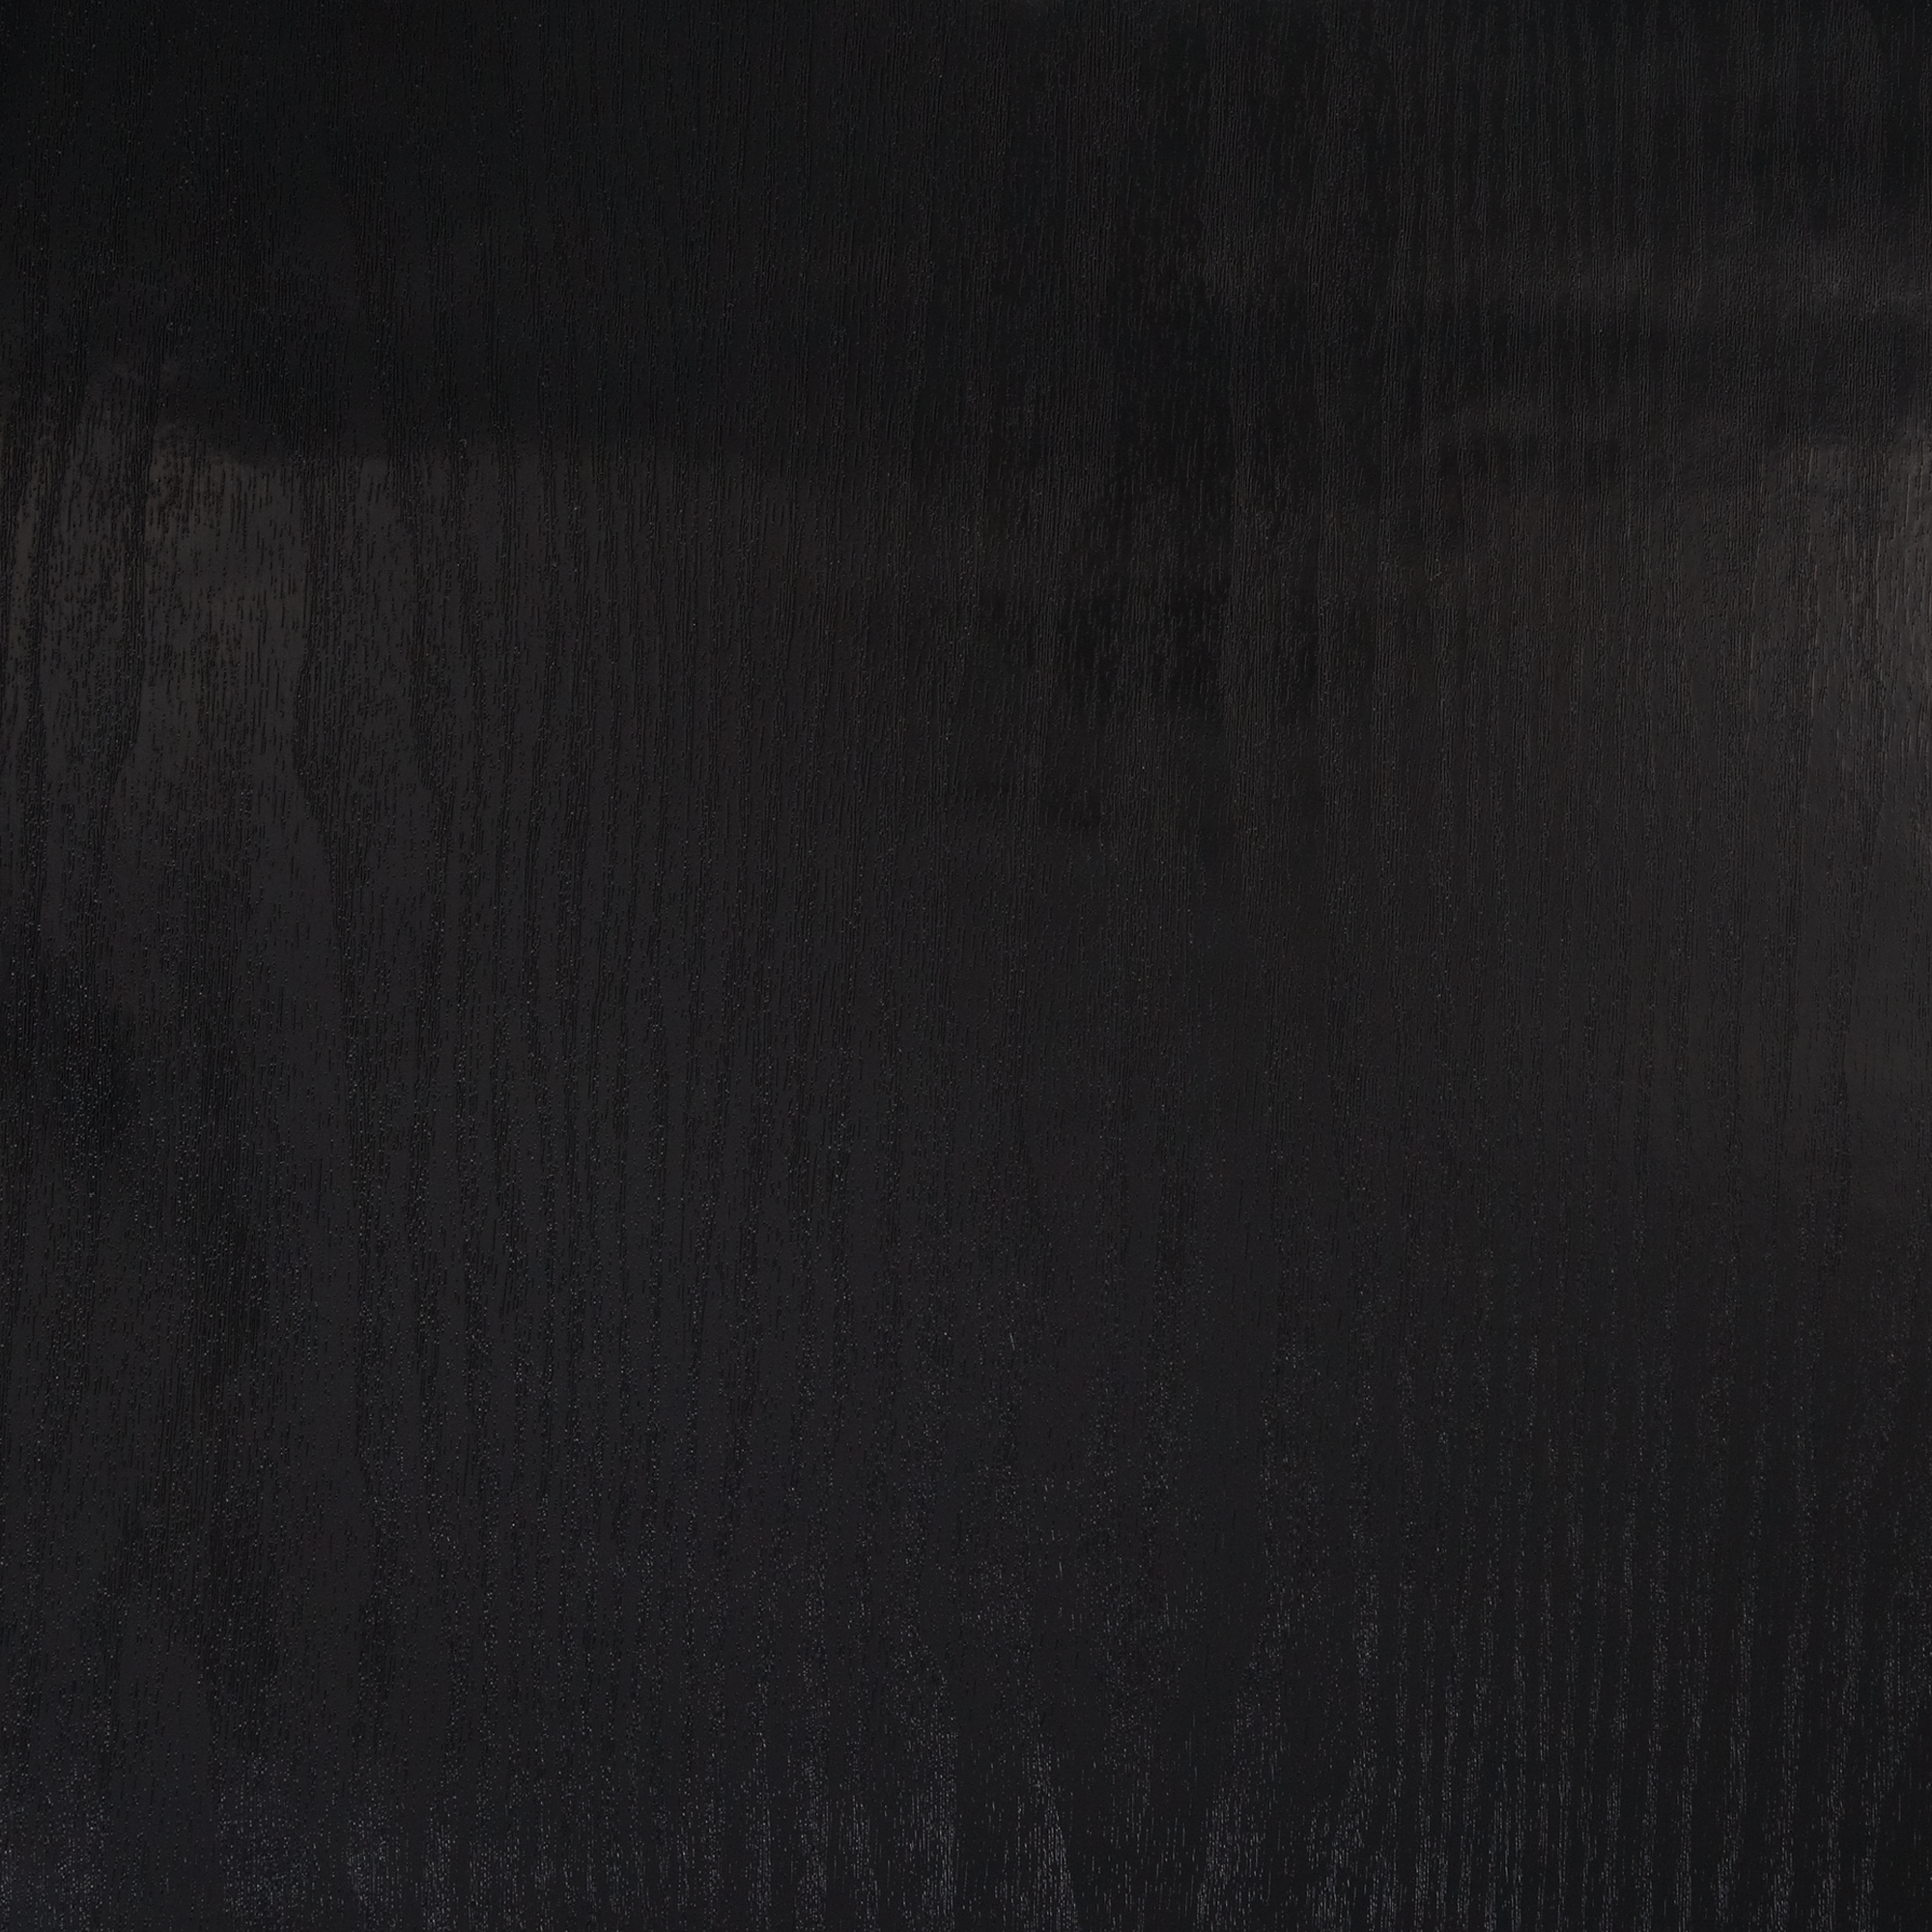 Klebefolie 'Blackwood' schwarz 200 x 45 cm